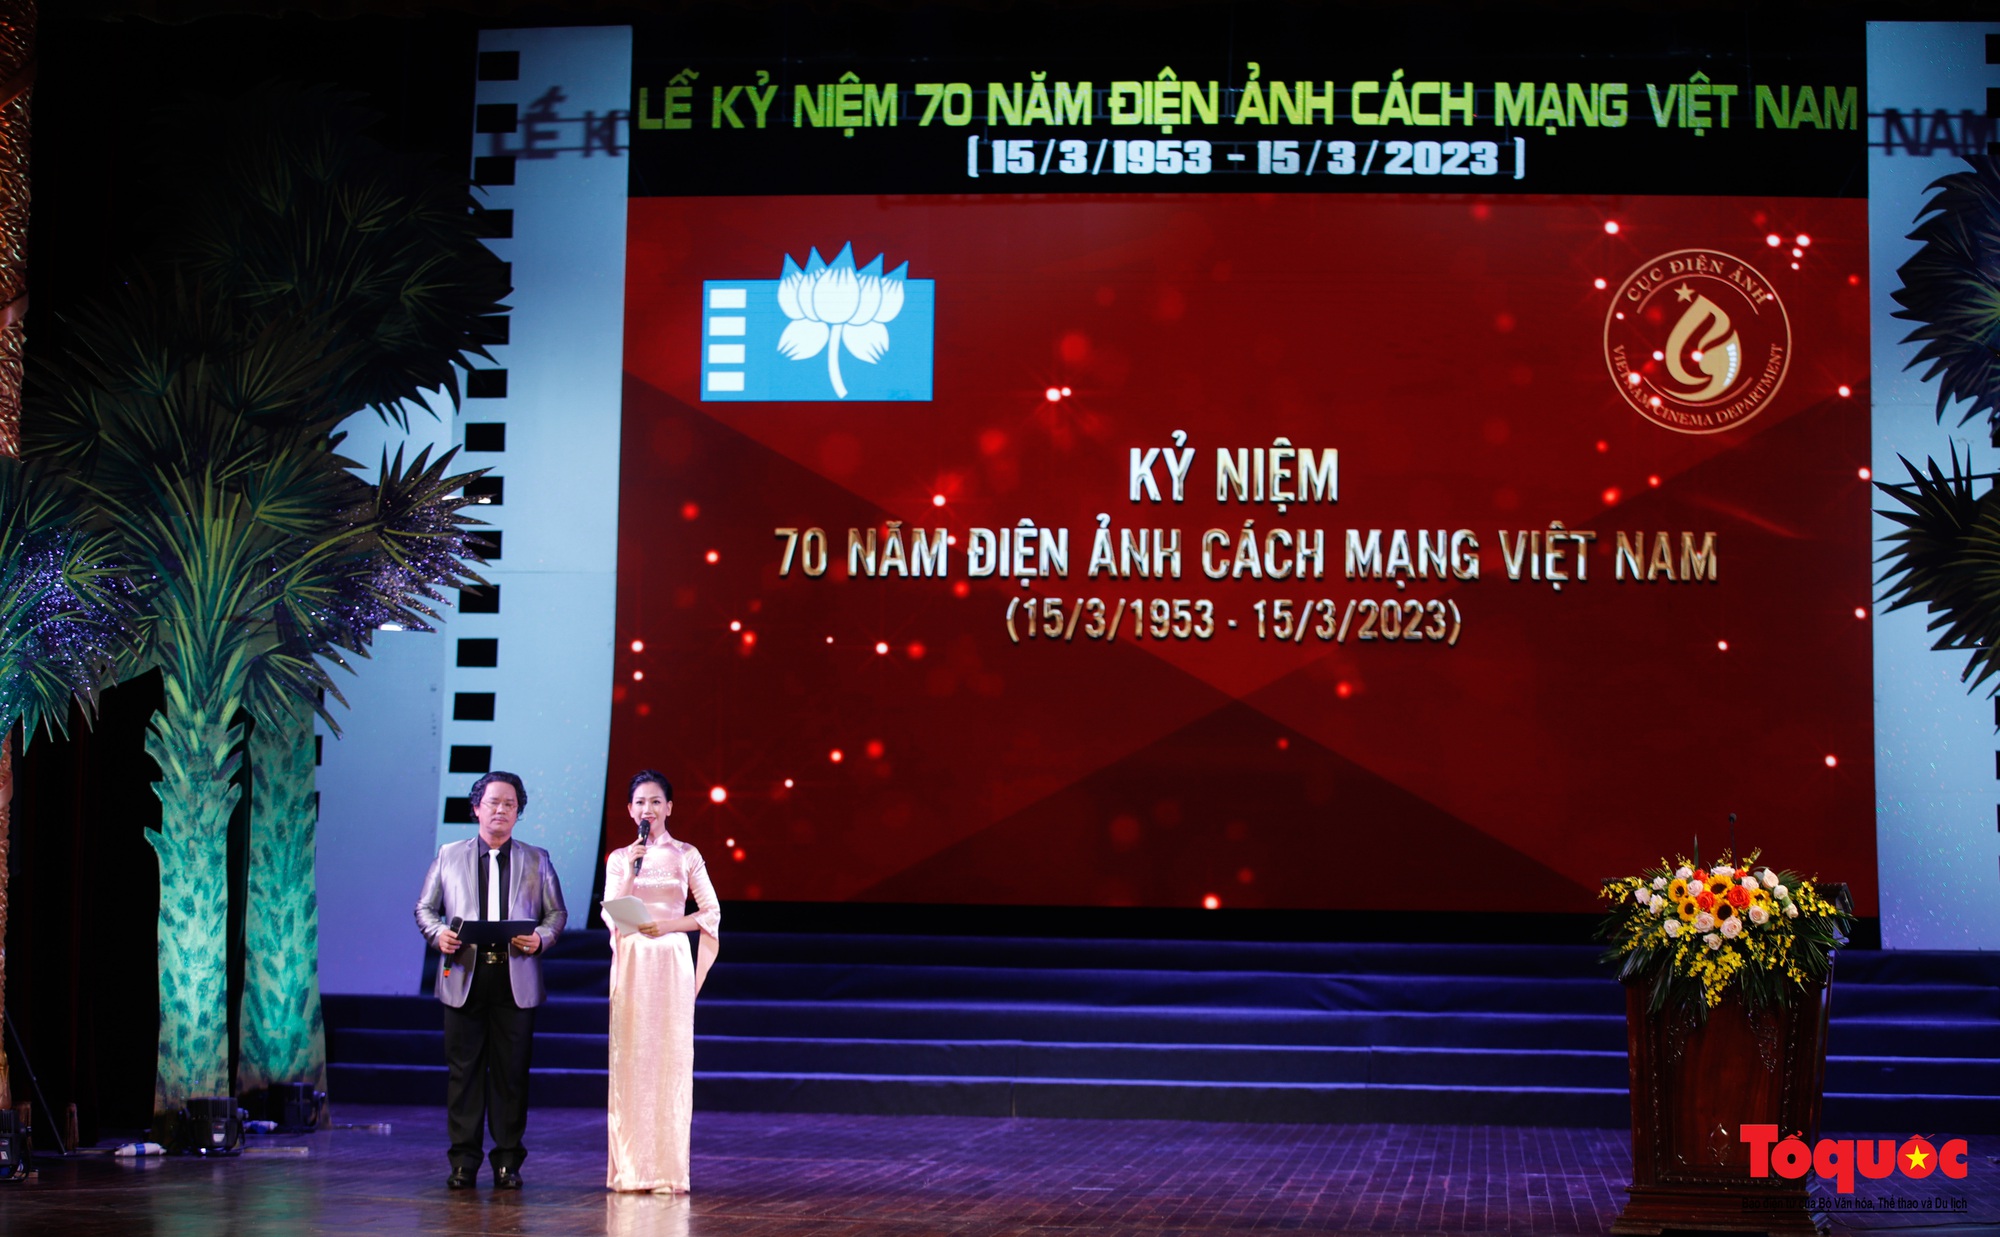 Kỷ niệm 70 năm điện ảnh cách mạng Việt Nam - Ảnh 1.